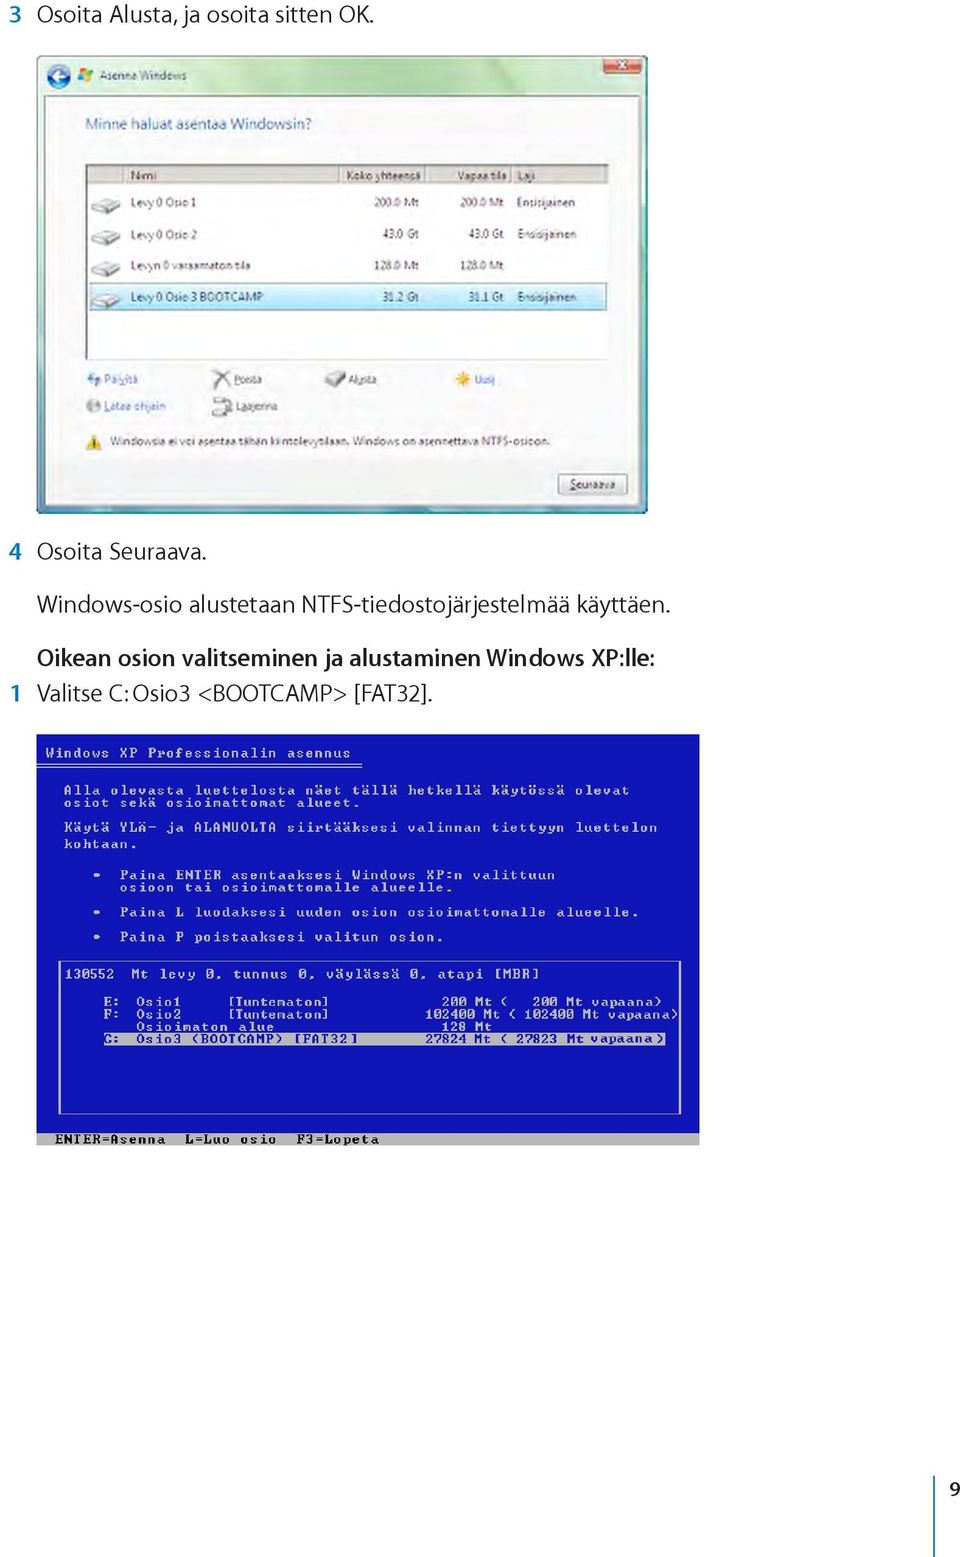 Windows-osio alustetaan NTFS-tiedostojärjestelmää